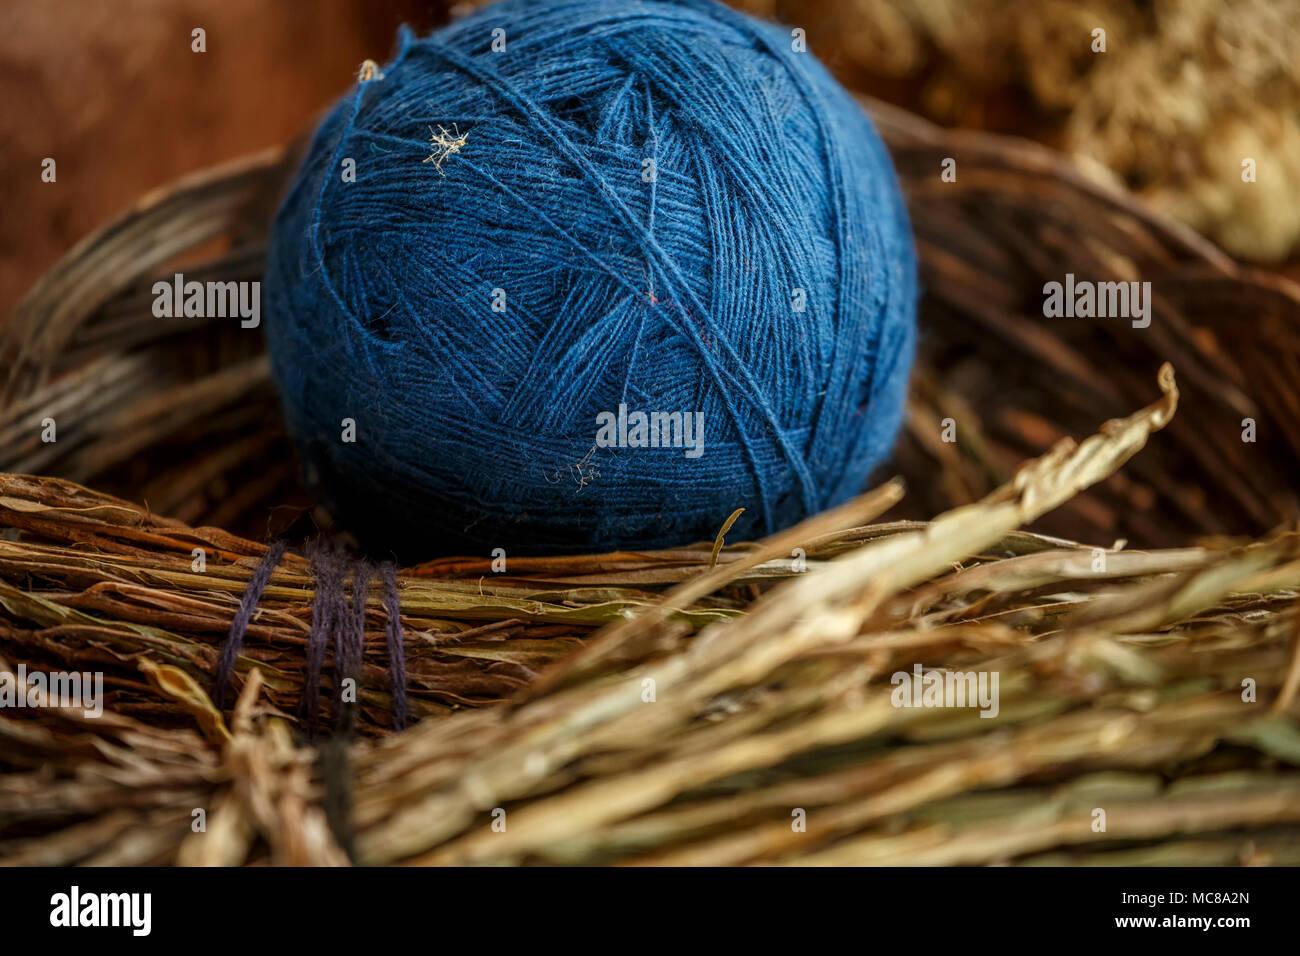 Sfera blu di lana e degli ingredienti utilizzati per creare il colore, El Balcon del Inka, Chinchero, Cusco, Perù Foto Stock